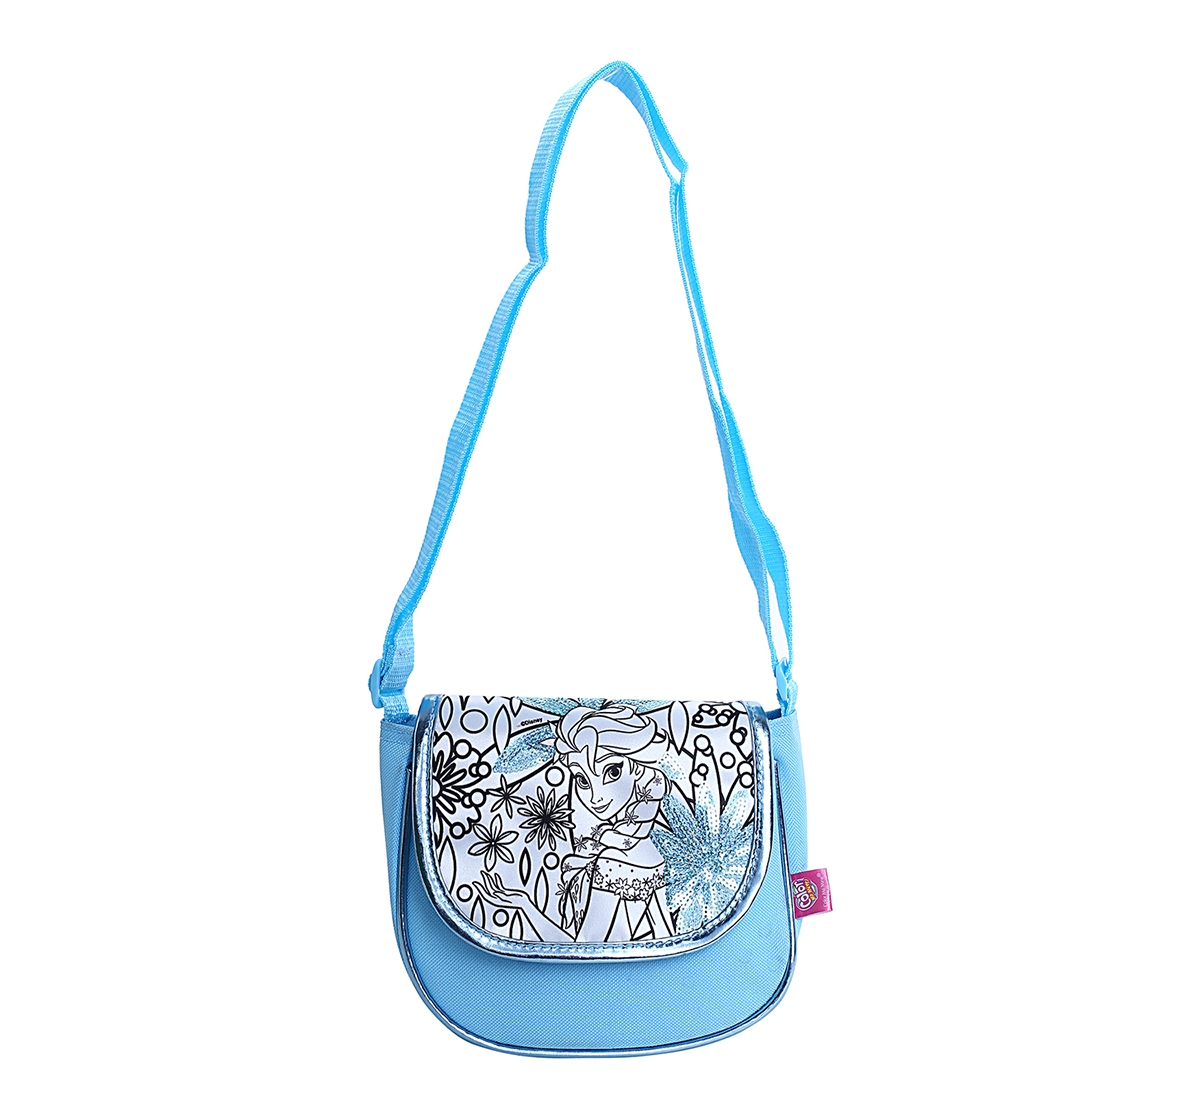 DISNEY | Disney Simba Color Me Mine Spring Sequin Bag - Frozen, Blue DIY Art & Craft Kits for Kids age 6Y+ 0